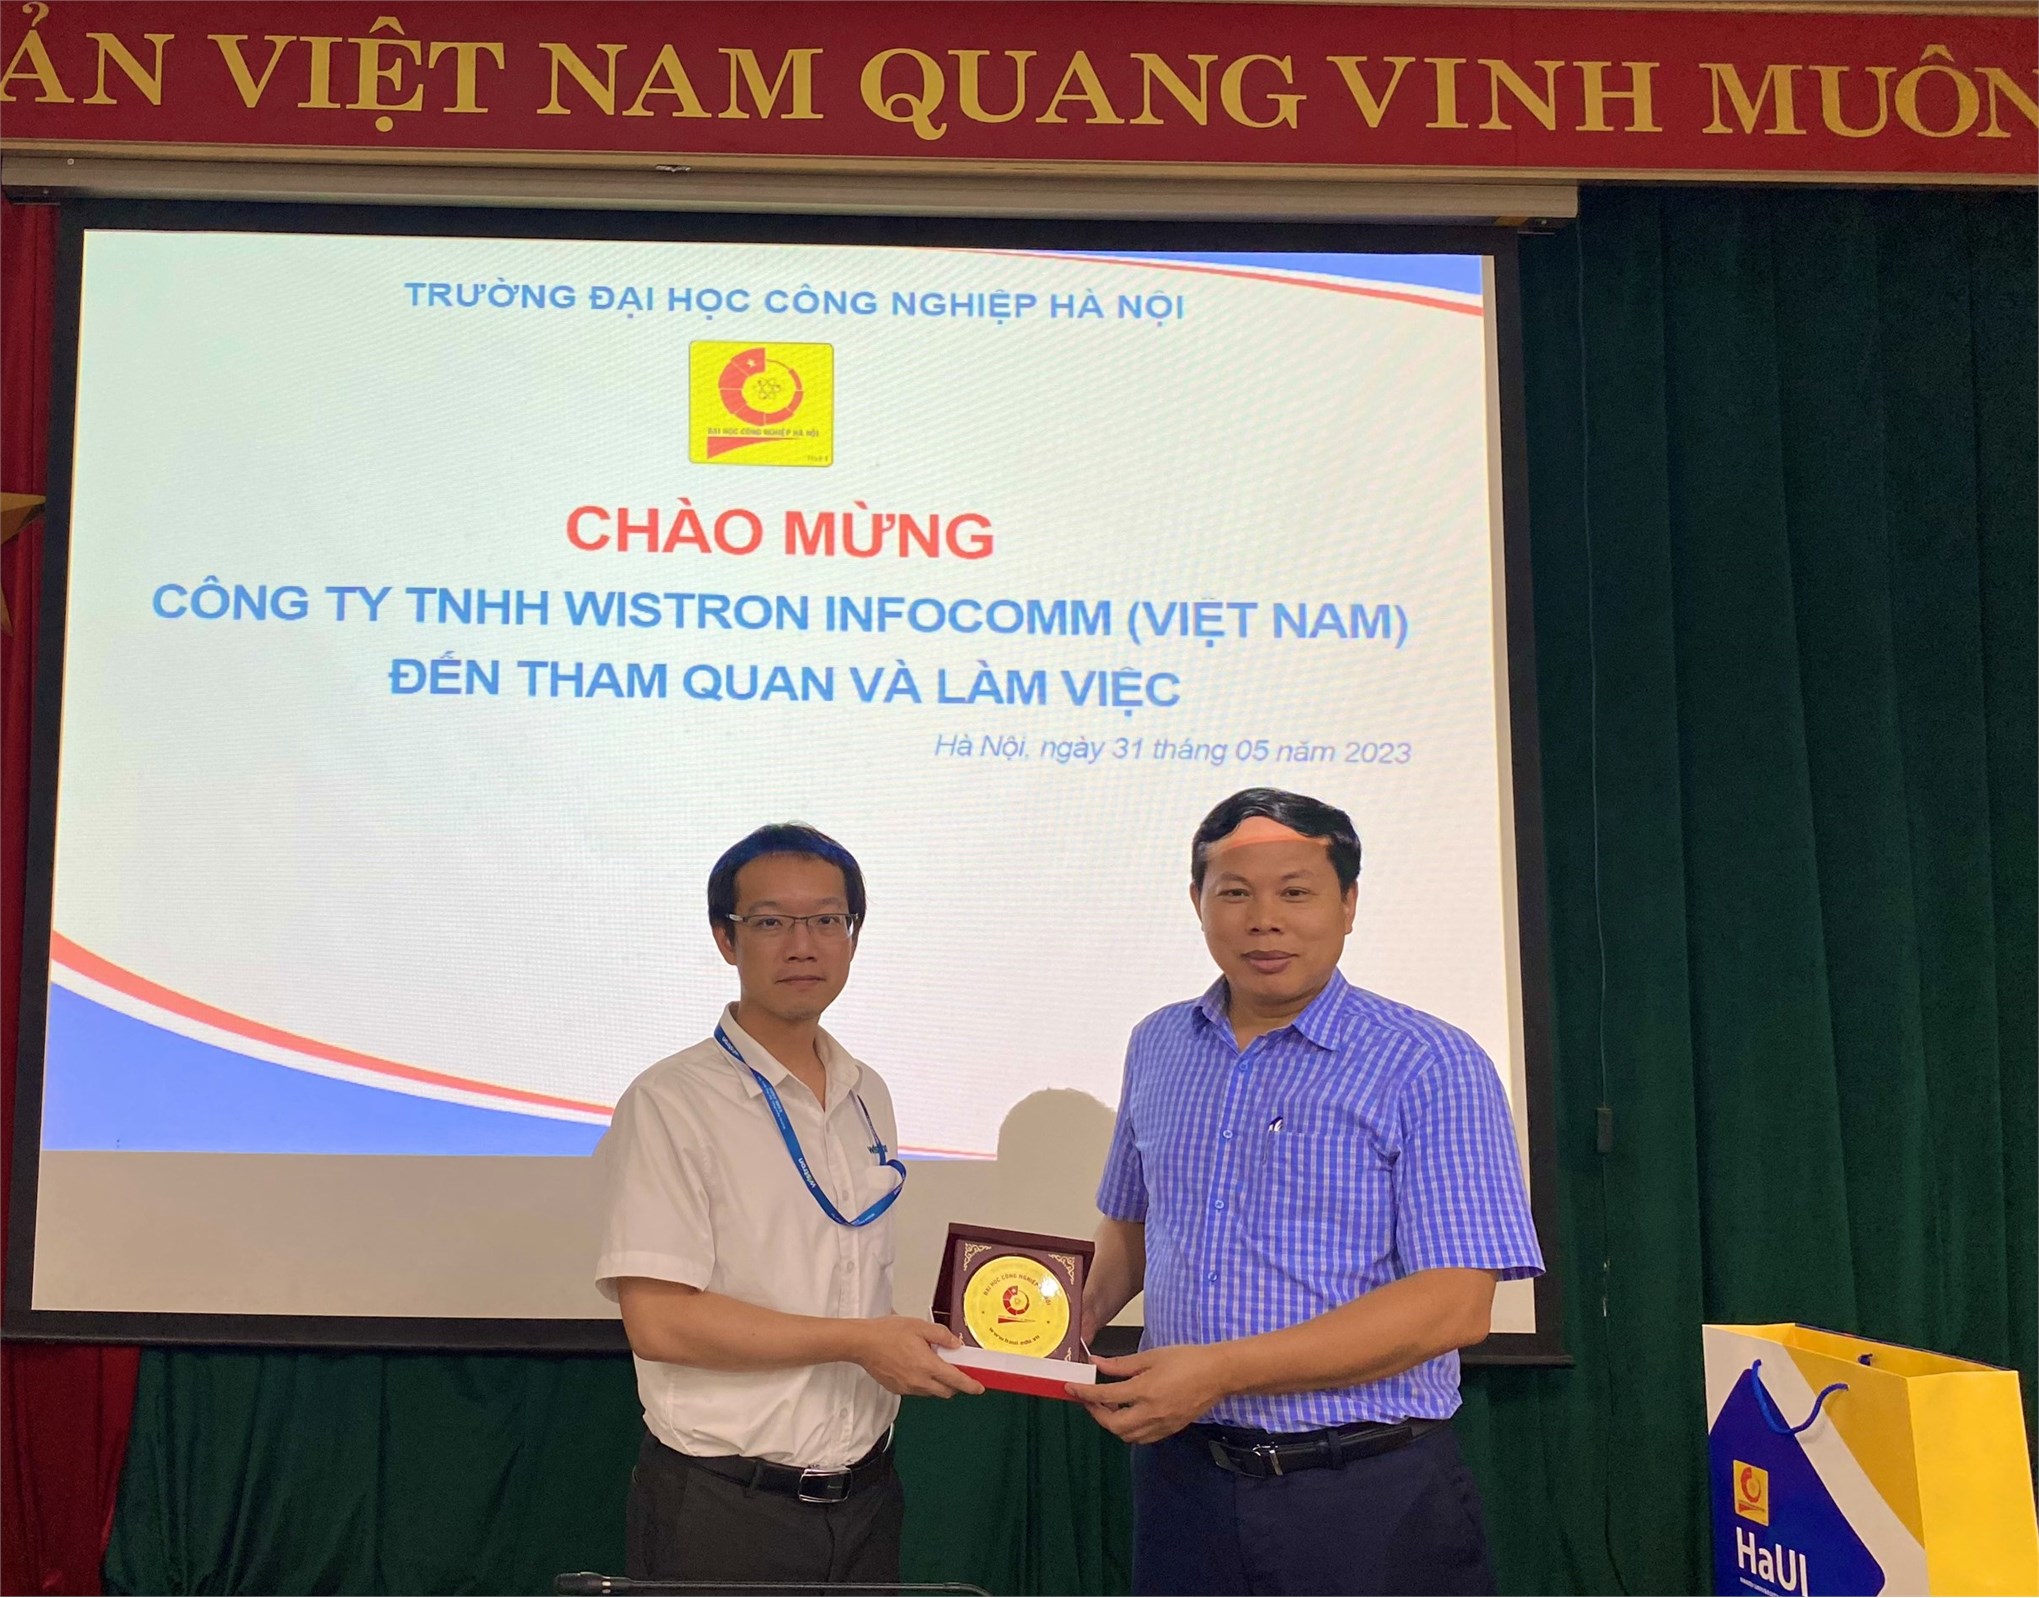 Công ty TNHH Wistron Infocomm (Việt Nam) tới tham quan và làm việc với Trường Đại học Công nghiệp Hà Nội